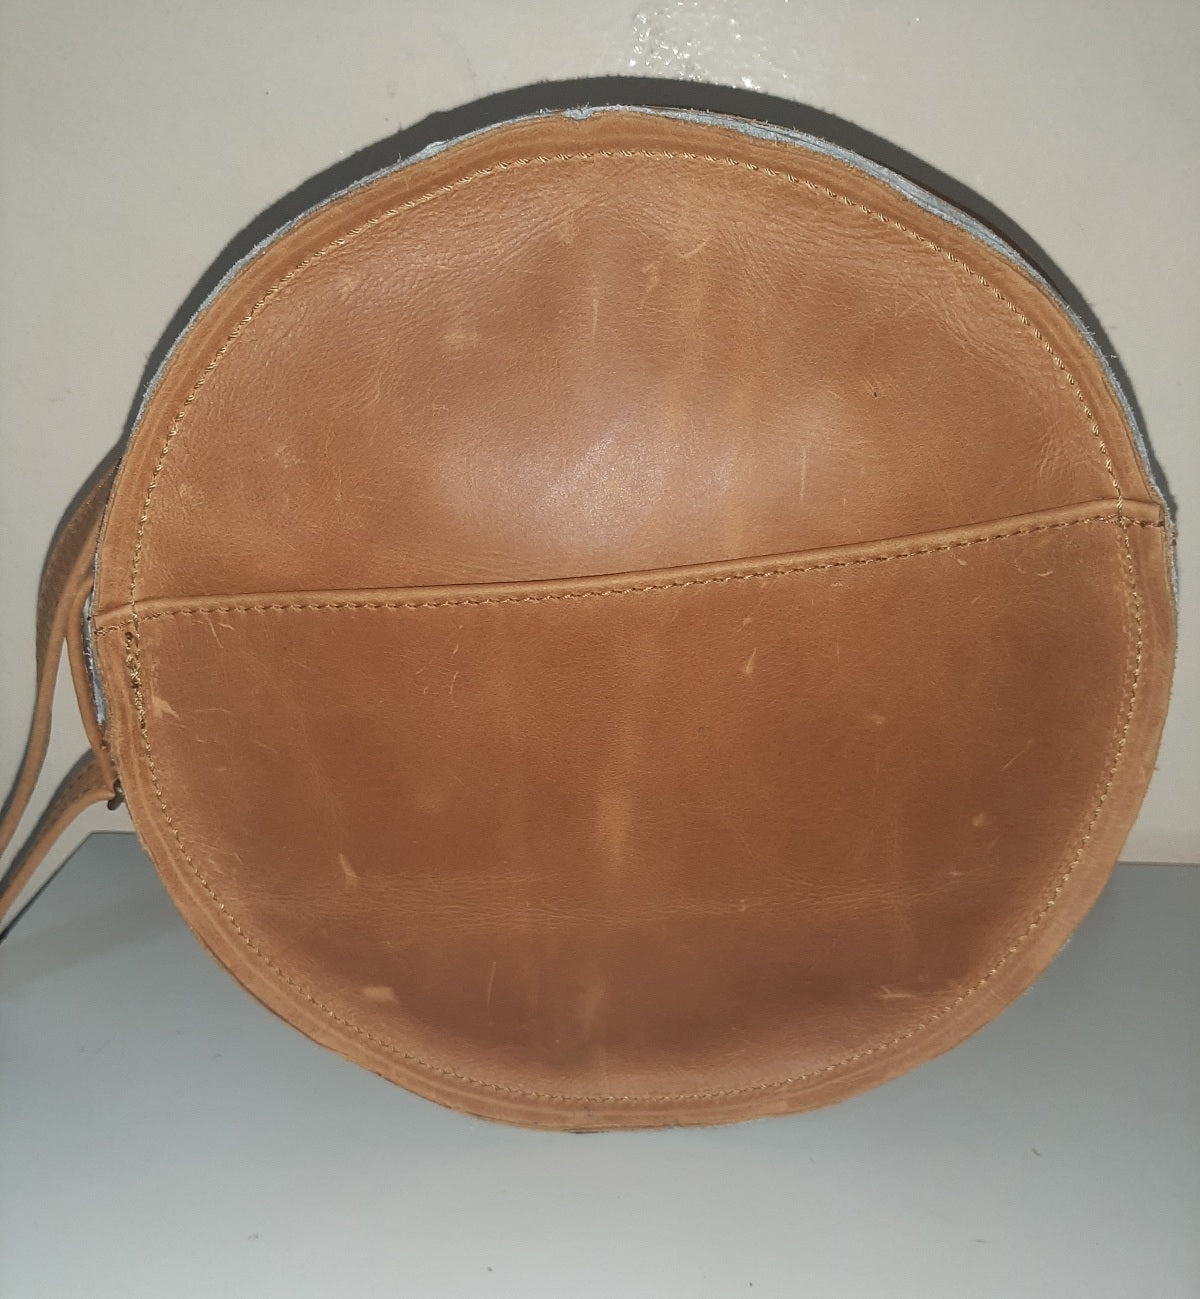 Kim Mini Sandle bags big - cape Masai leather 